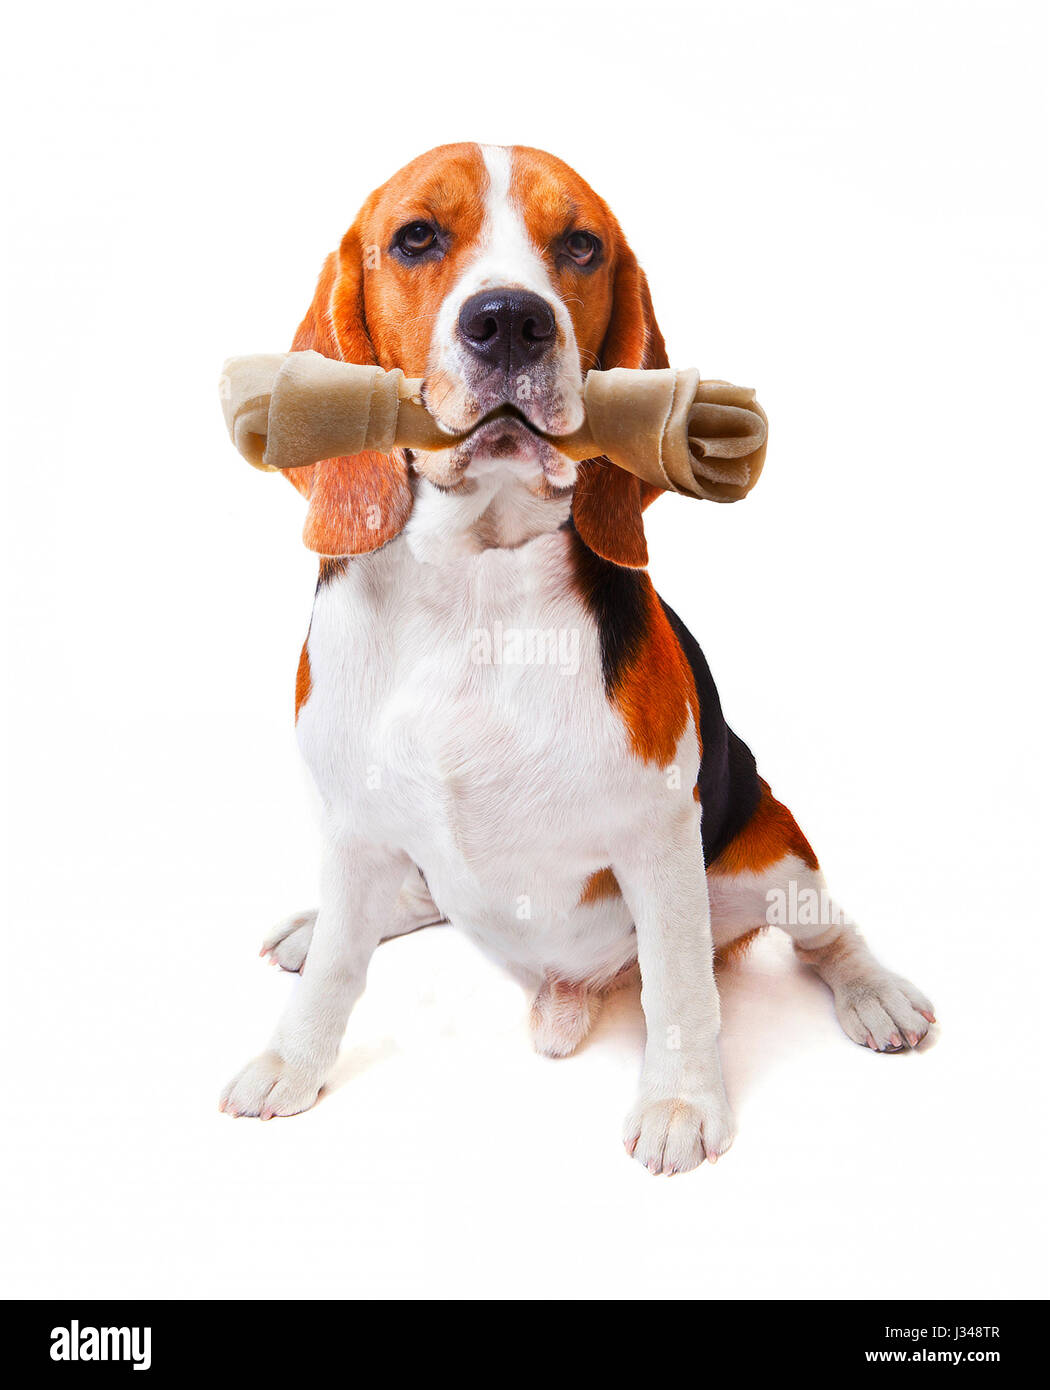 Visage de chien beagle avec rawhide bone dans sa bouche isolé sur fond blanc pour l'utilisation des animaux et animaux domestiques thème charmant Banque D'Images